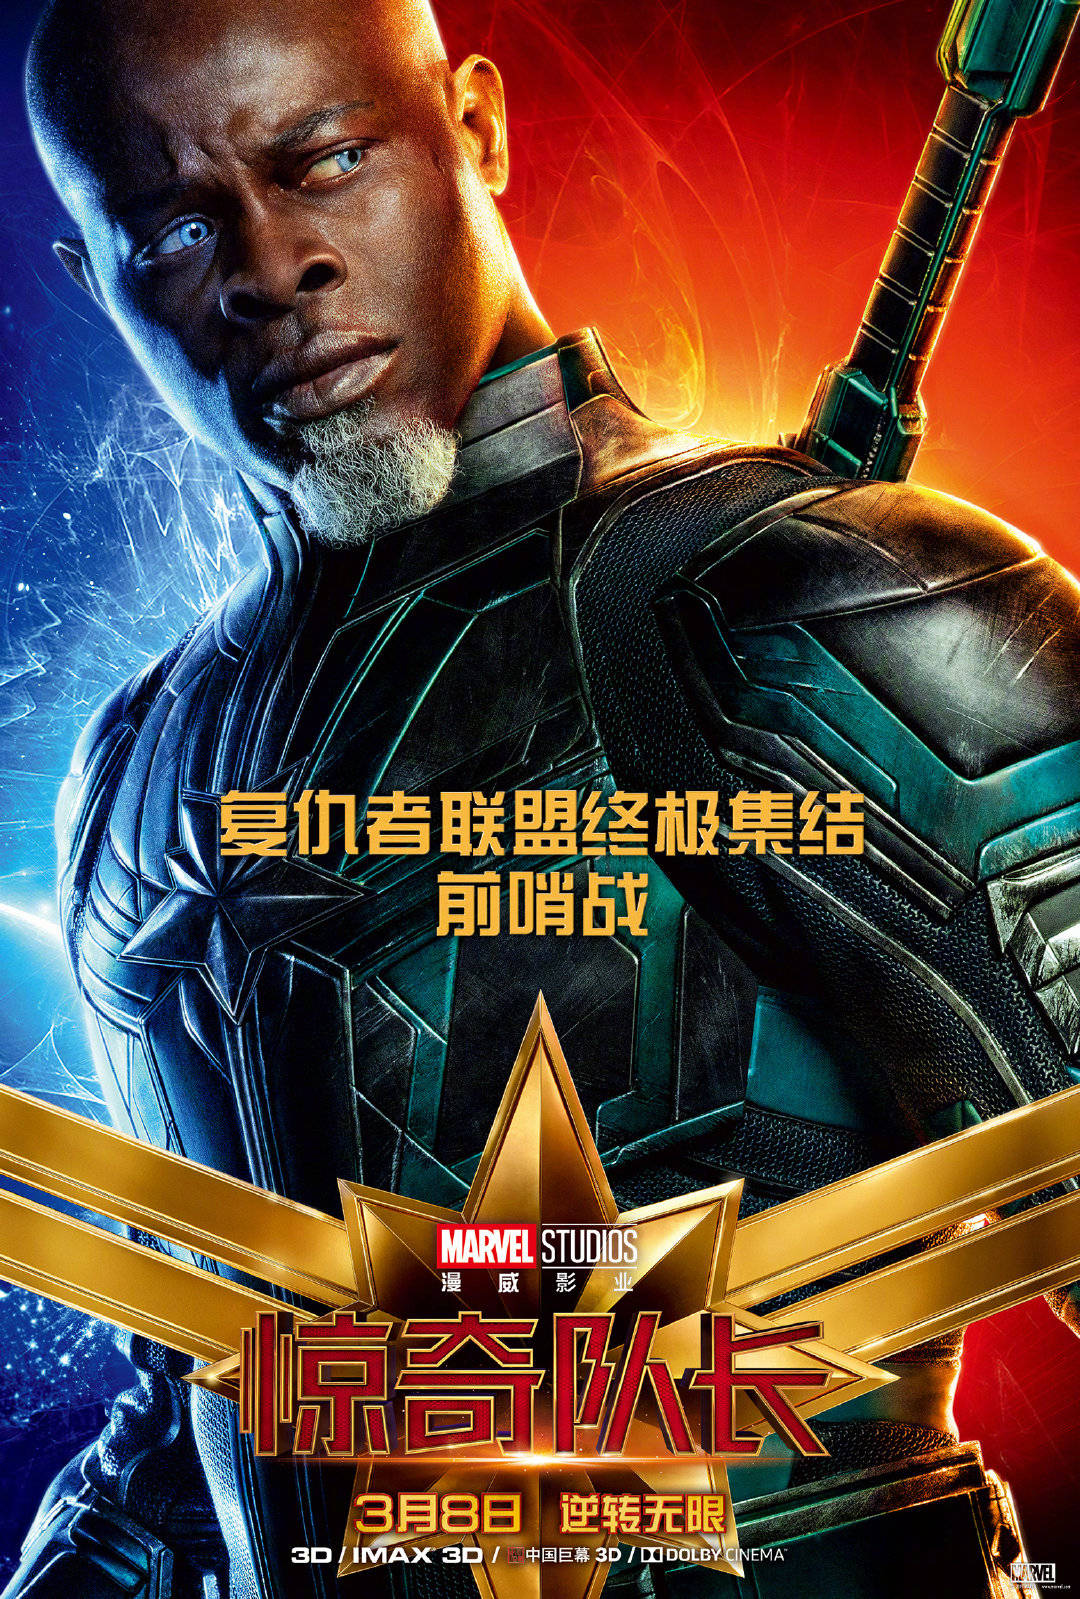 @太原影评 《惊奇队长》发布中文角色海报,大